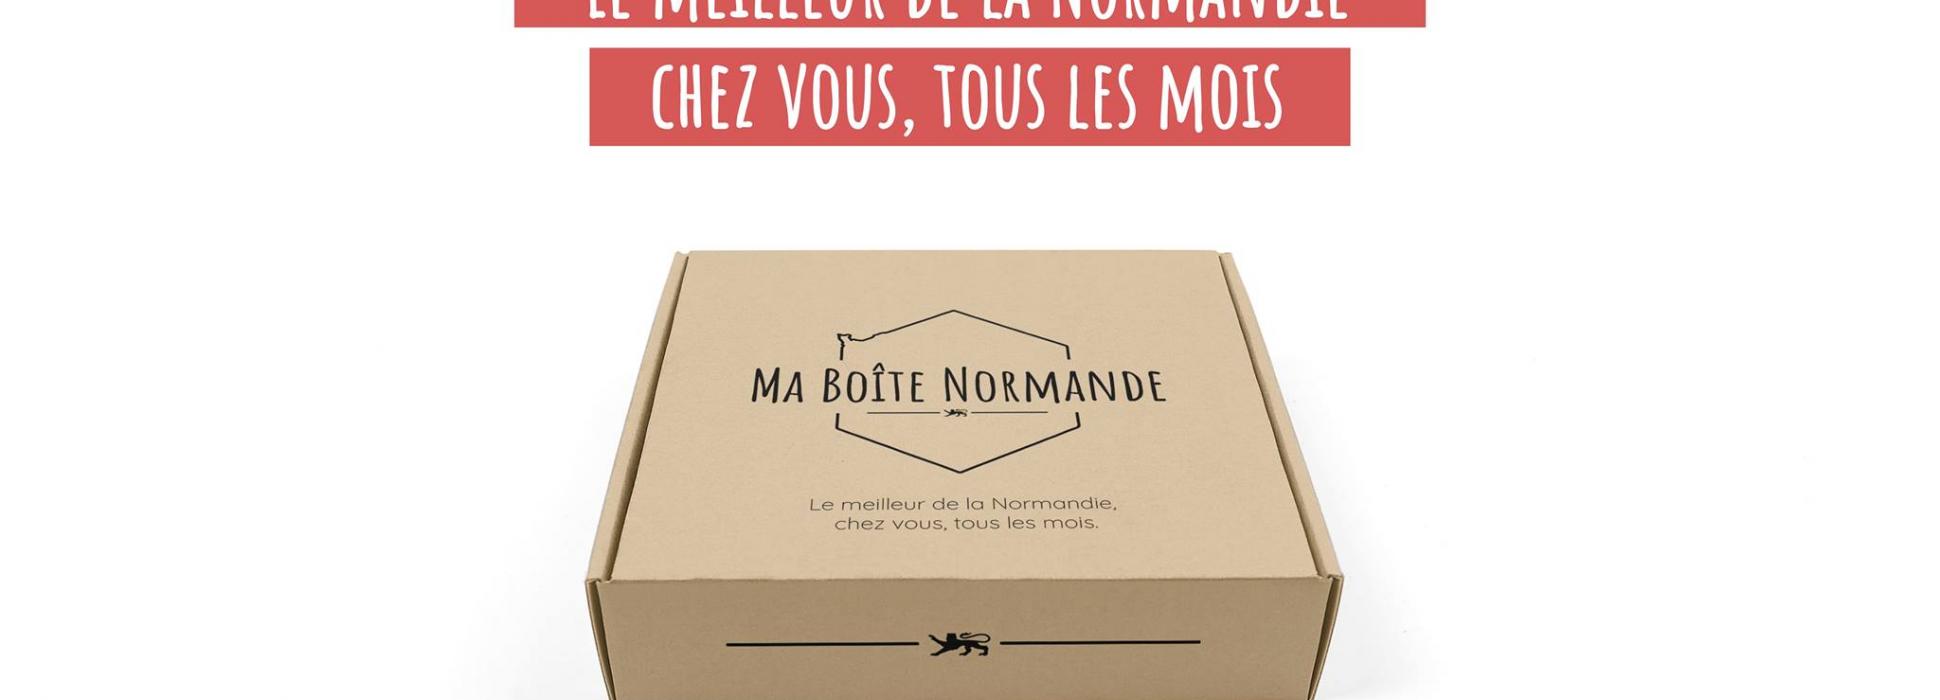 Ma boîte Normande, première box par abonnement, amène le meilleur de la Normandie à domicile